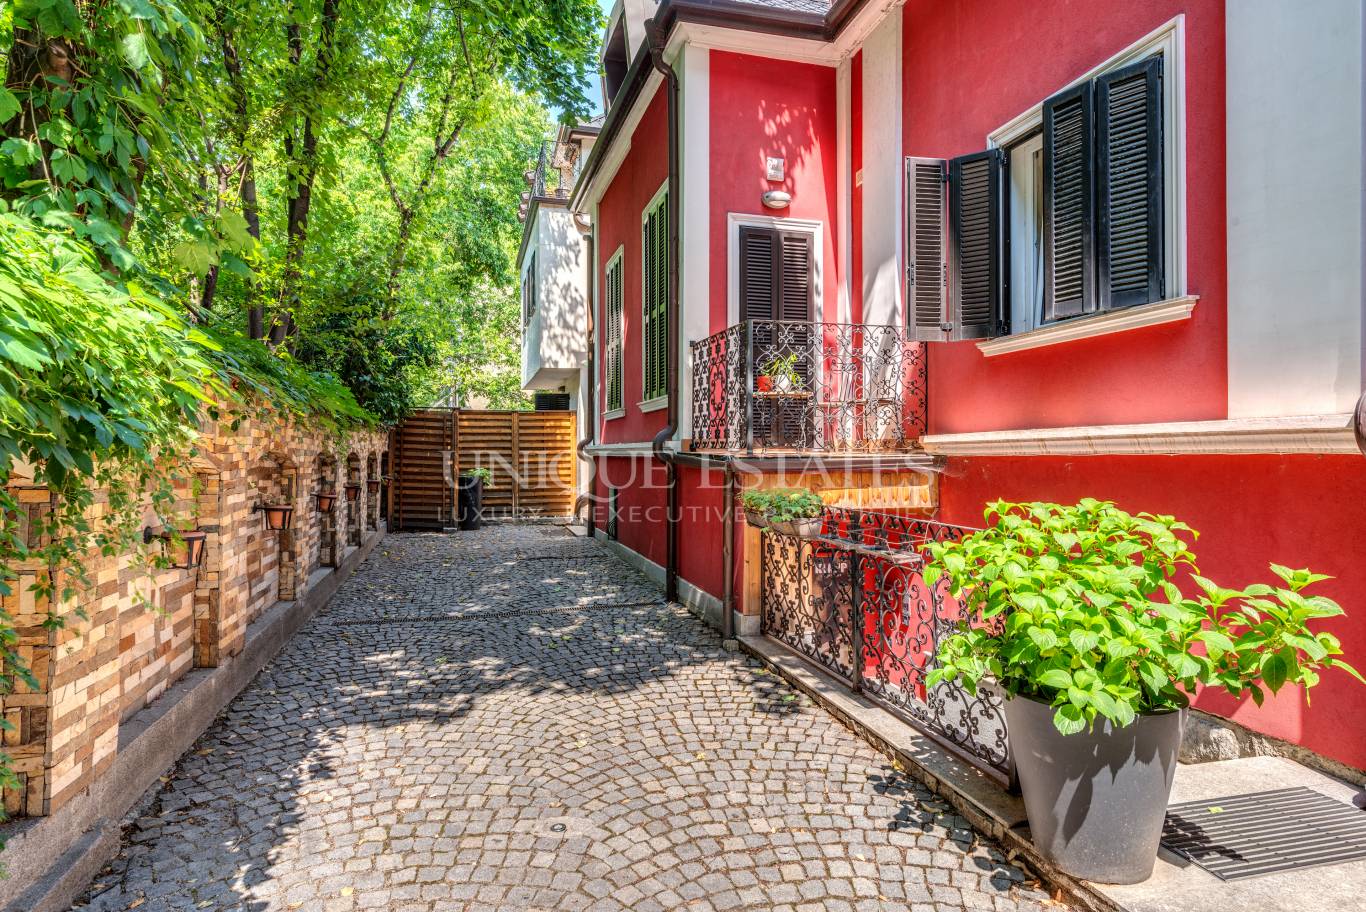 Апартамент под наем в София, Докторска градина - код на имота: N21125 - image 1